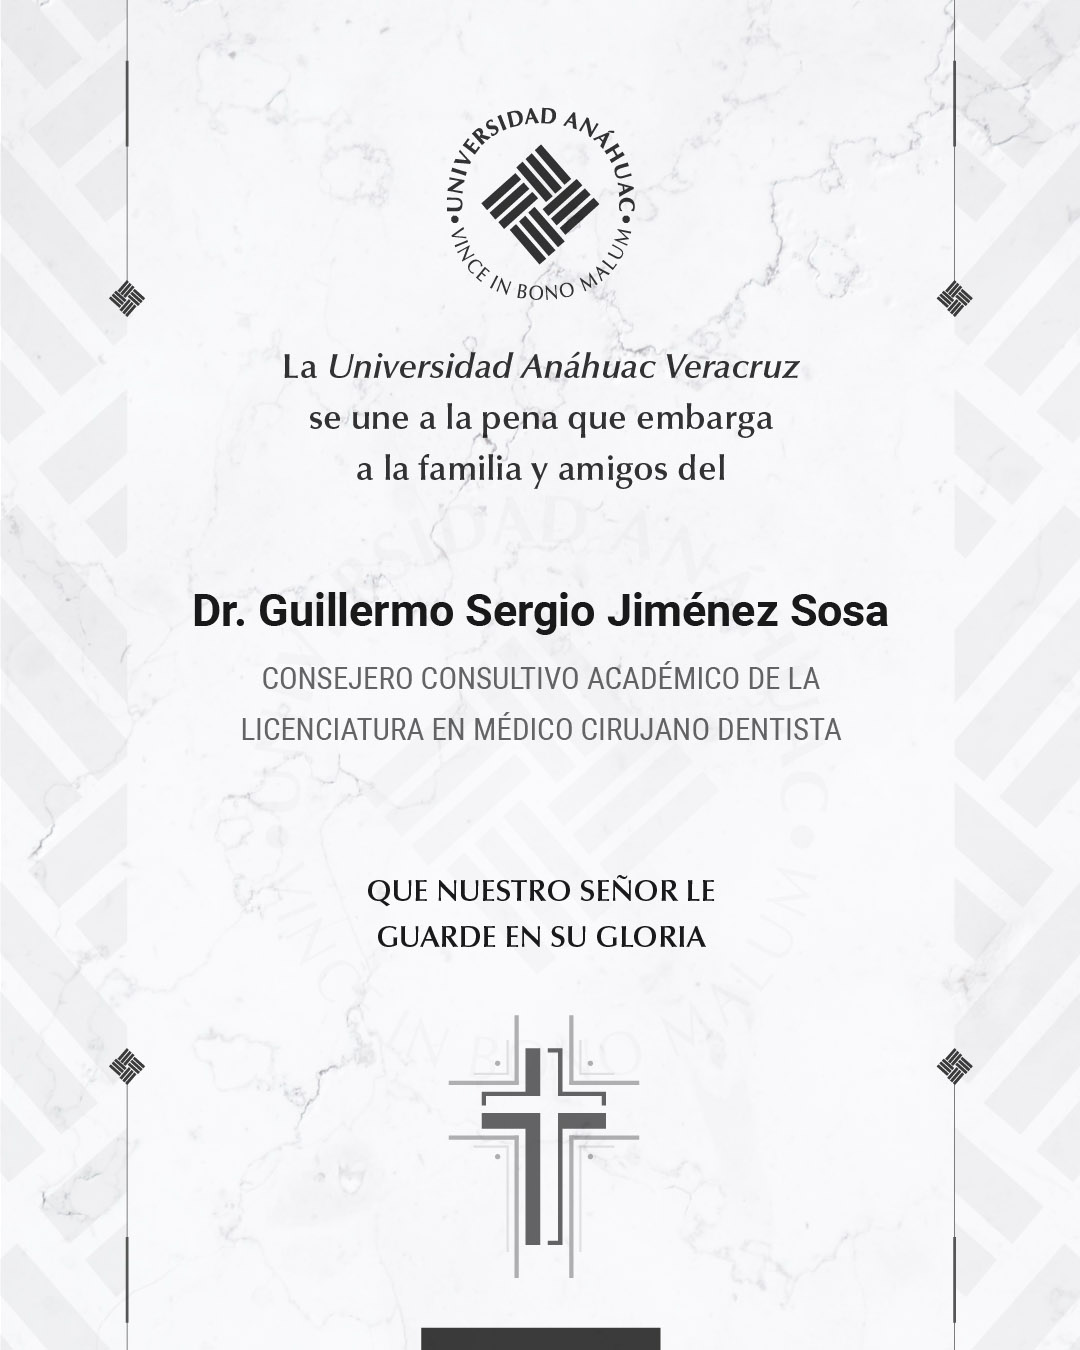 5 / 17 - Dr. Guillermo Sergio Jiménez Sosa